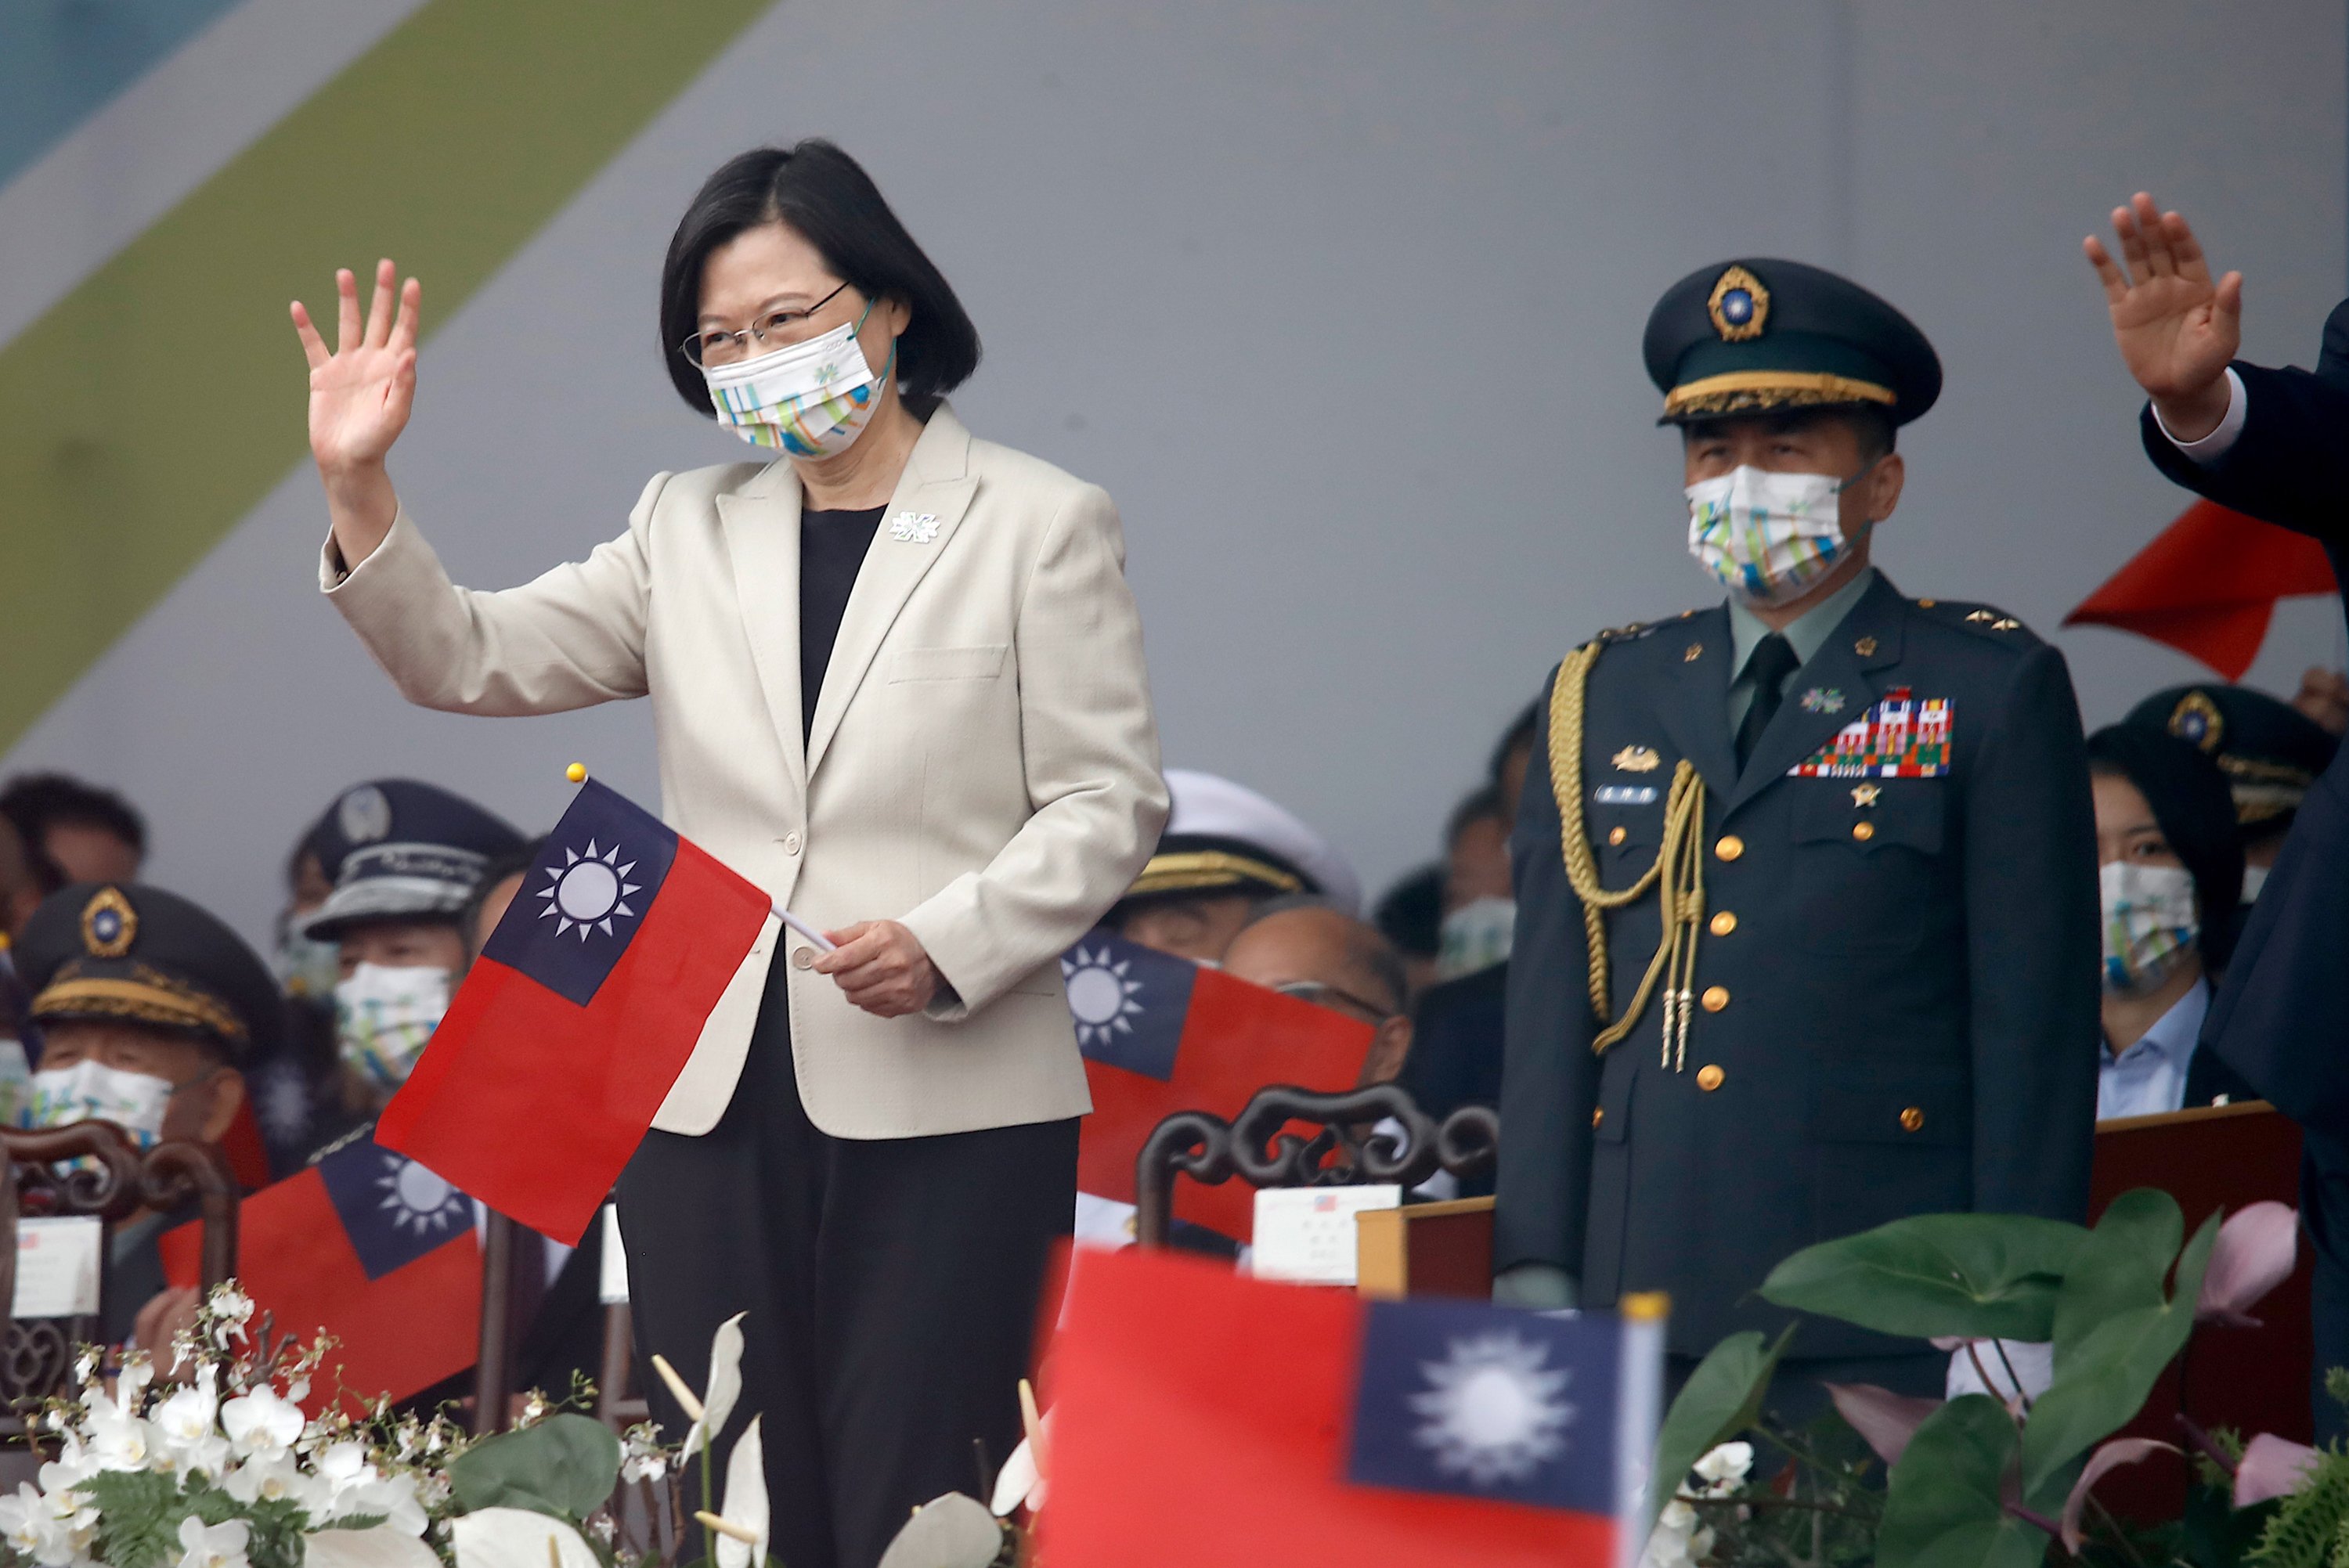 Taiwan respon a l'amenaça de Xi Jinping: "El conflicte militar no és una opció"